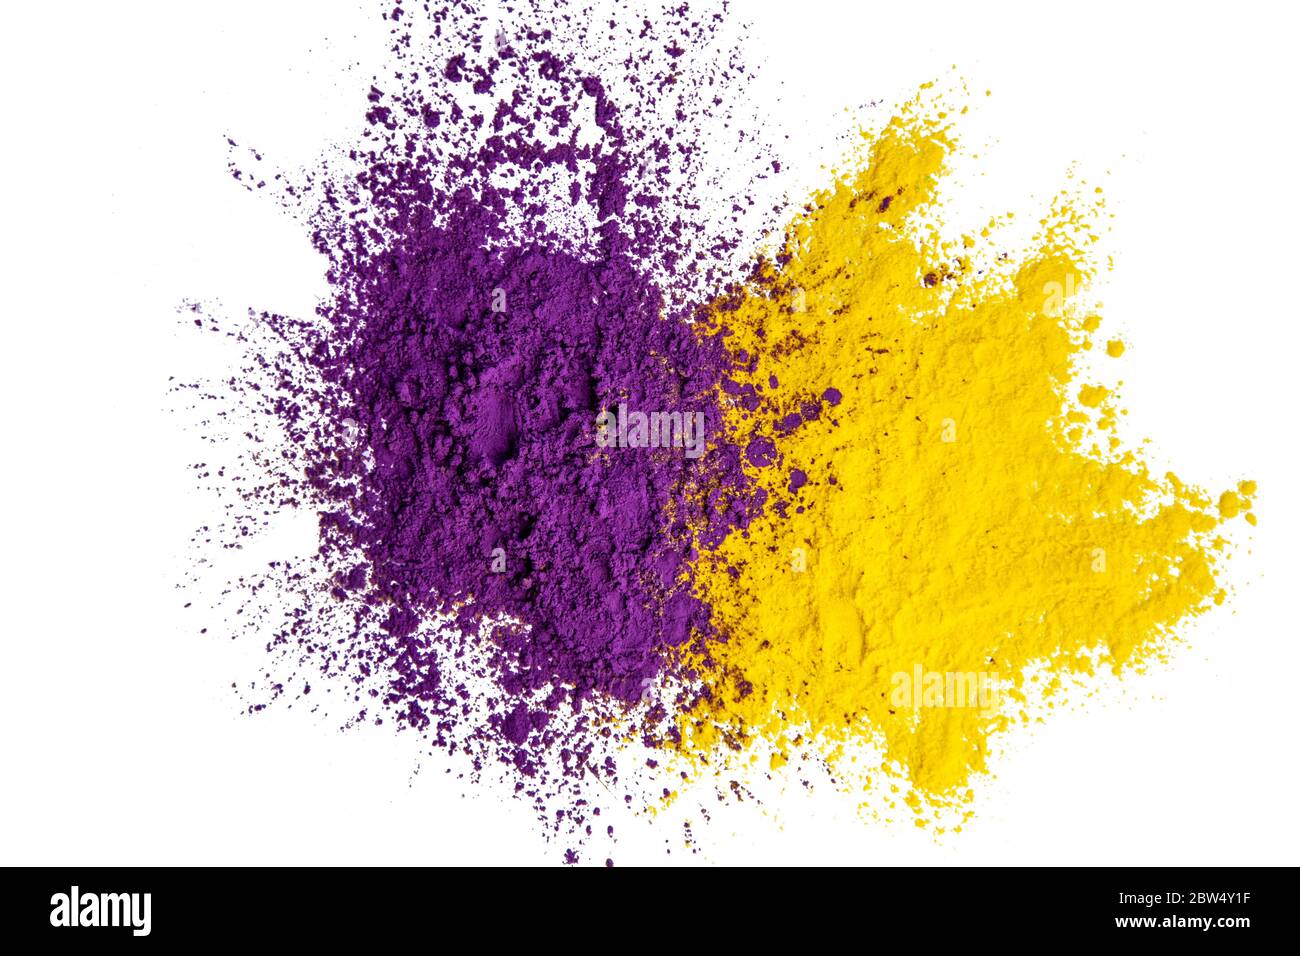 Abstrakter Hintergrund von lila und gelben trockenen Pulverfarben.Kopierraum in der Mitte der gemischten trockenen Farben. Stockfoto